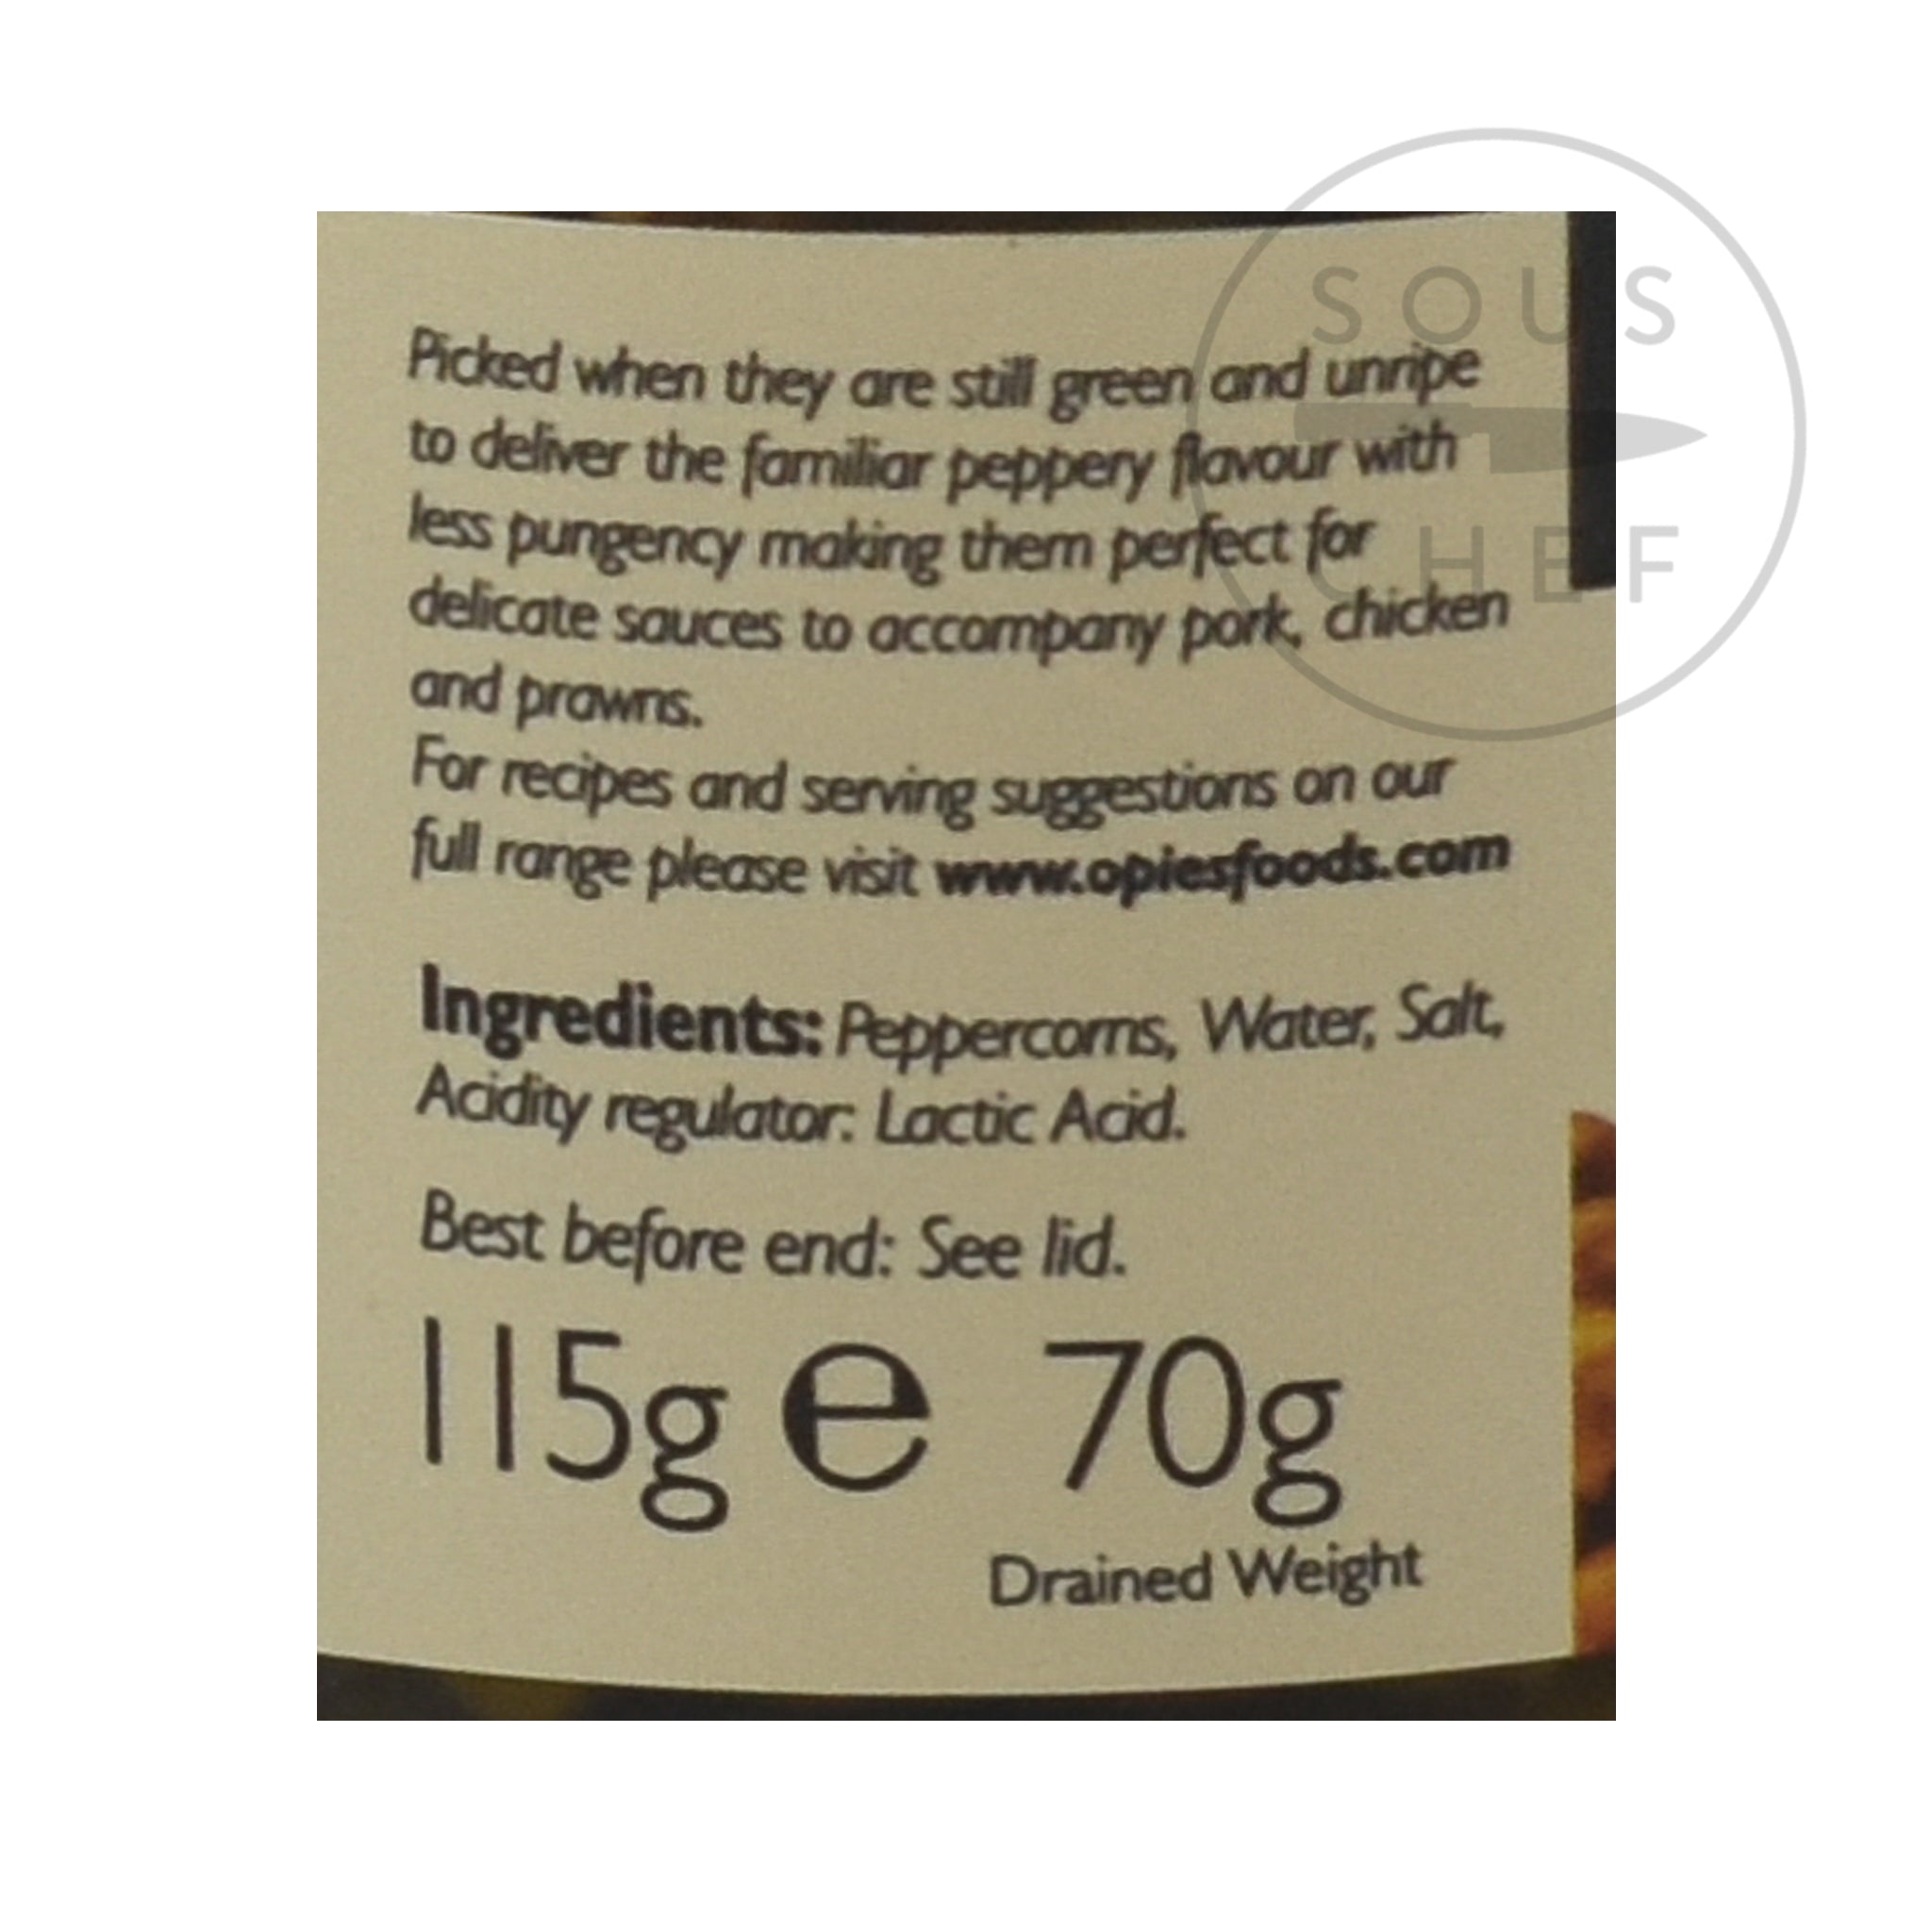 Green Peppercorns in Brine 115g ingredients